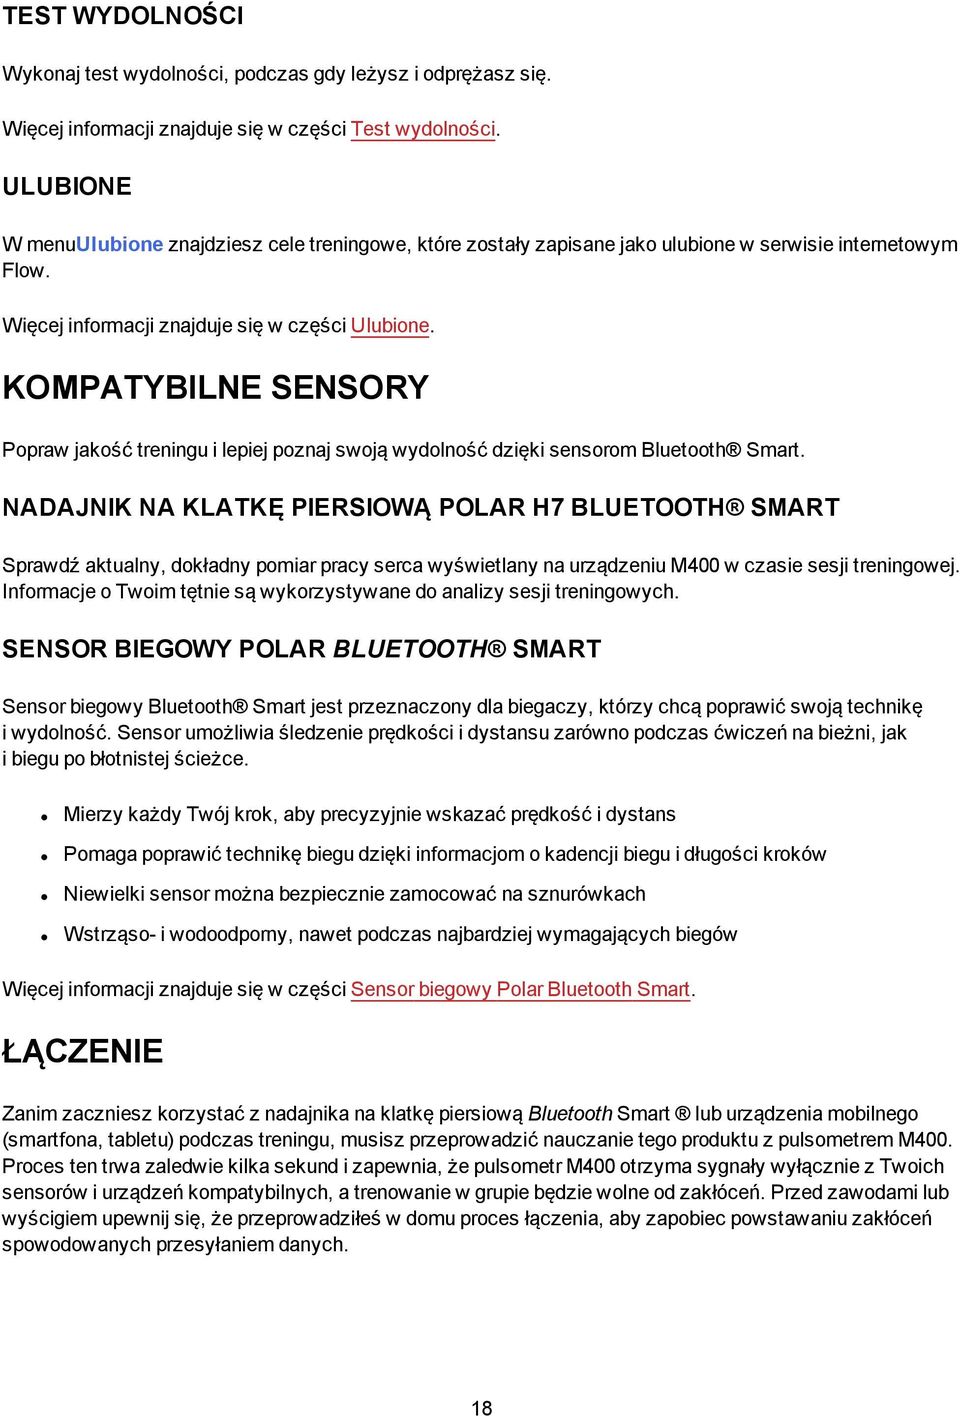 KOMPATYBILNE SENSORY Popraw jakość treningu i lepiej poznaj swoją wydolność dzięki sensorom Bluetooth Smart.